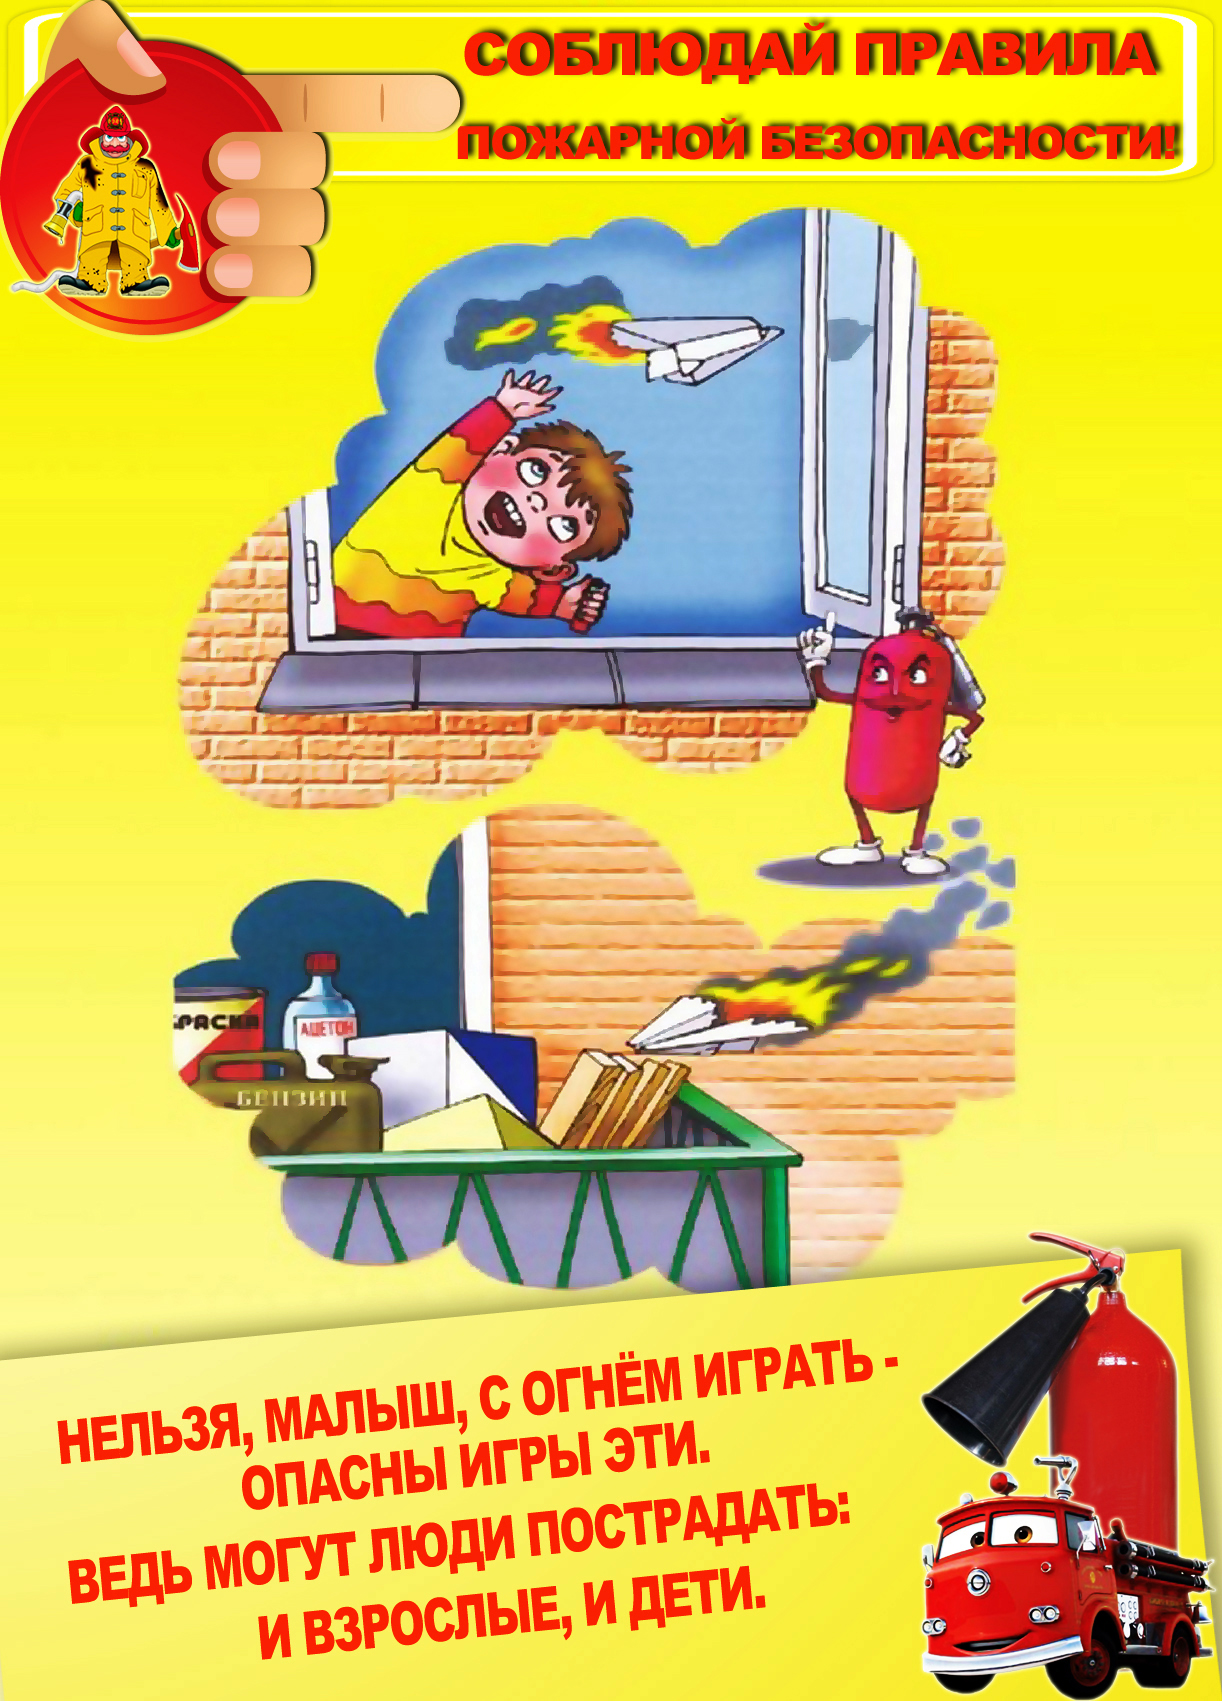 Пожарная безопасность для детей в садик. Пожарная безопасность для детей. Правила пожарной безопасности. Пожарная безопсностьдля детей. Плакат пожарная безопасность для детей.